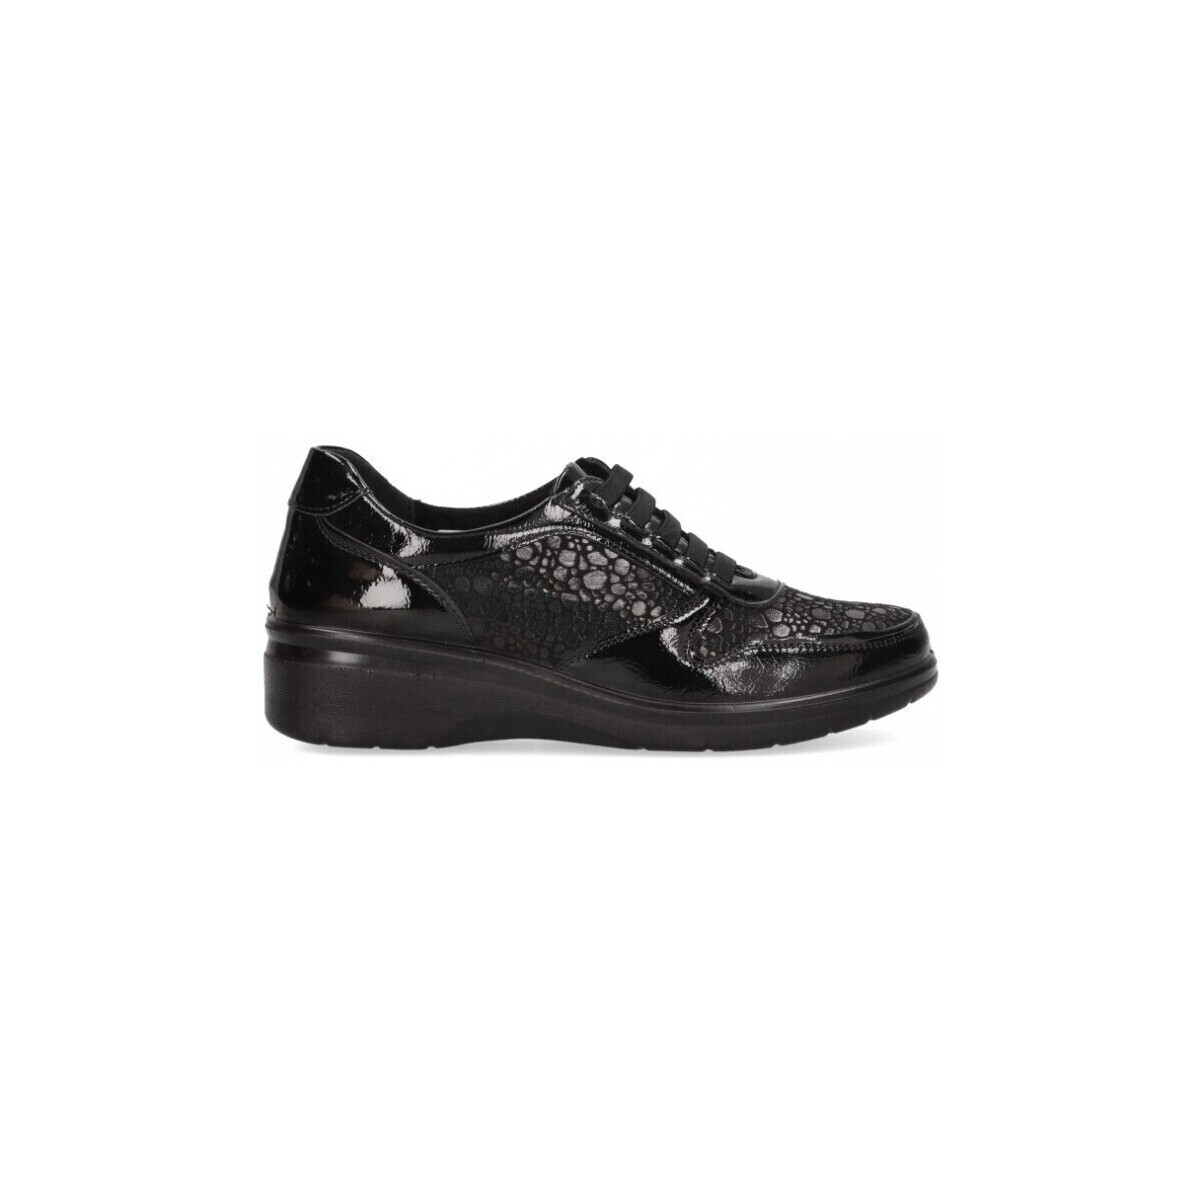 Παπούτσια Γυναίκα Sneakers Amarpies 70869 Black